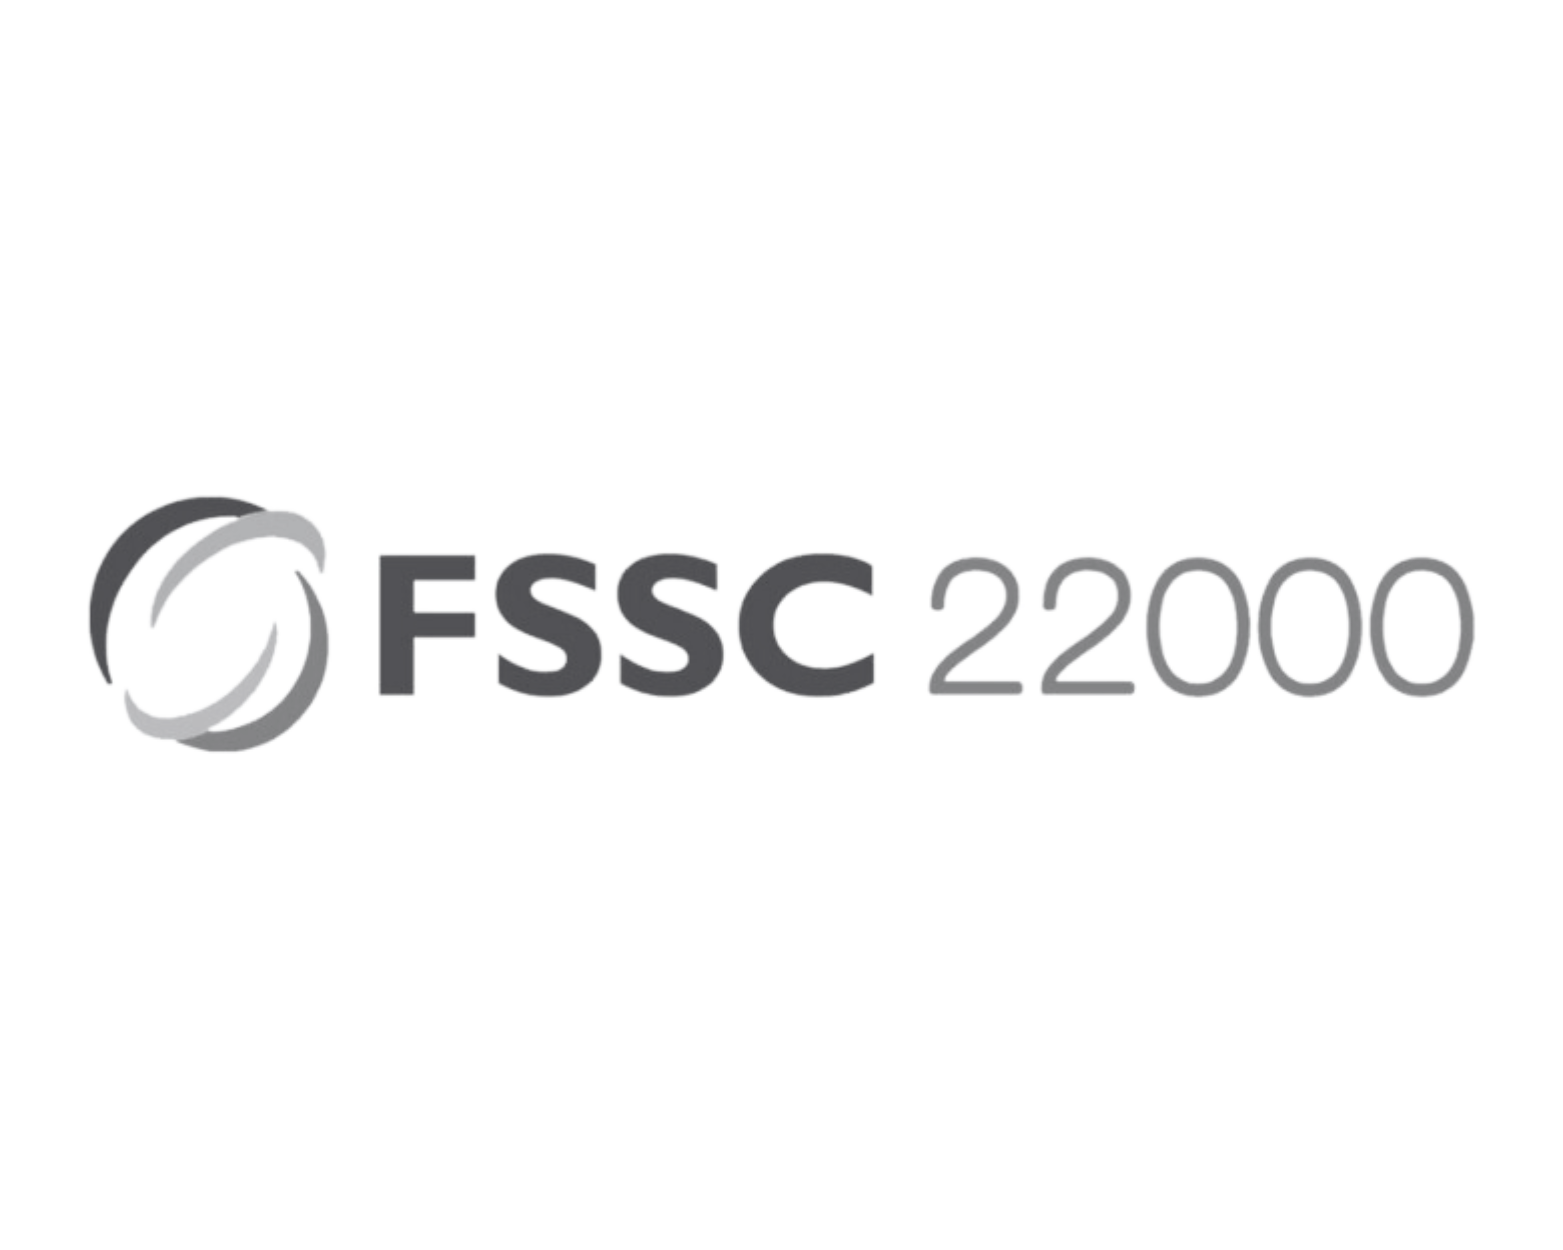 FSSC 22000 Logo.png